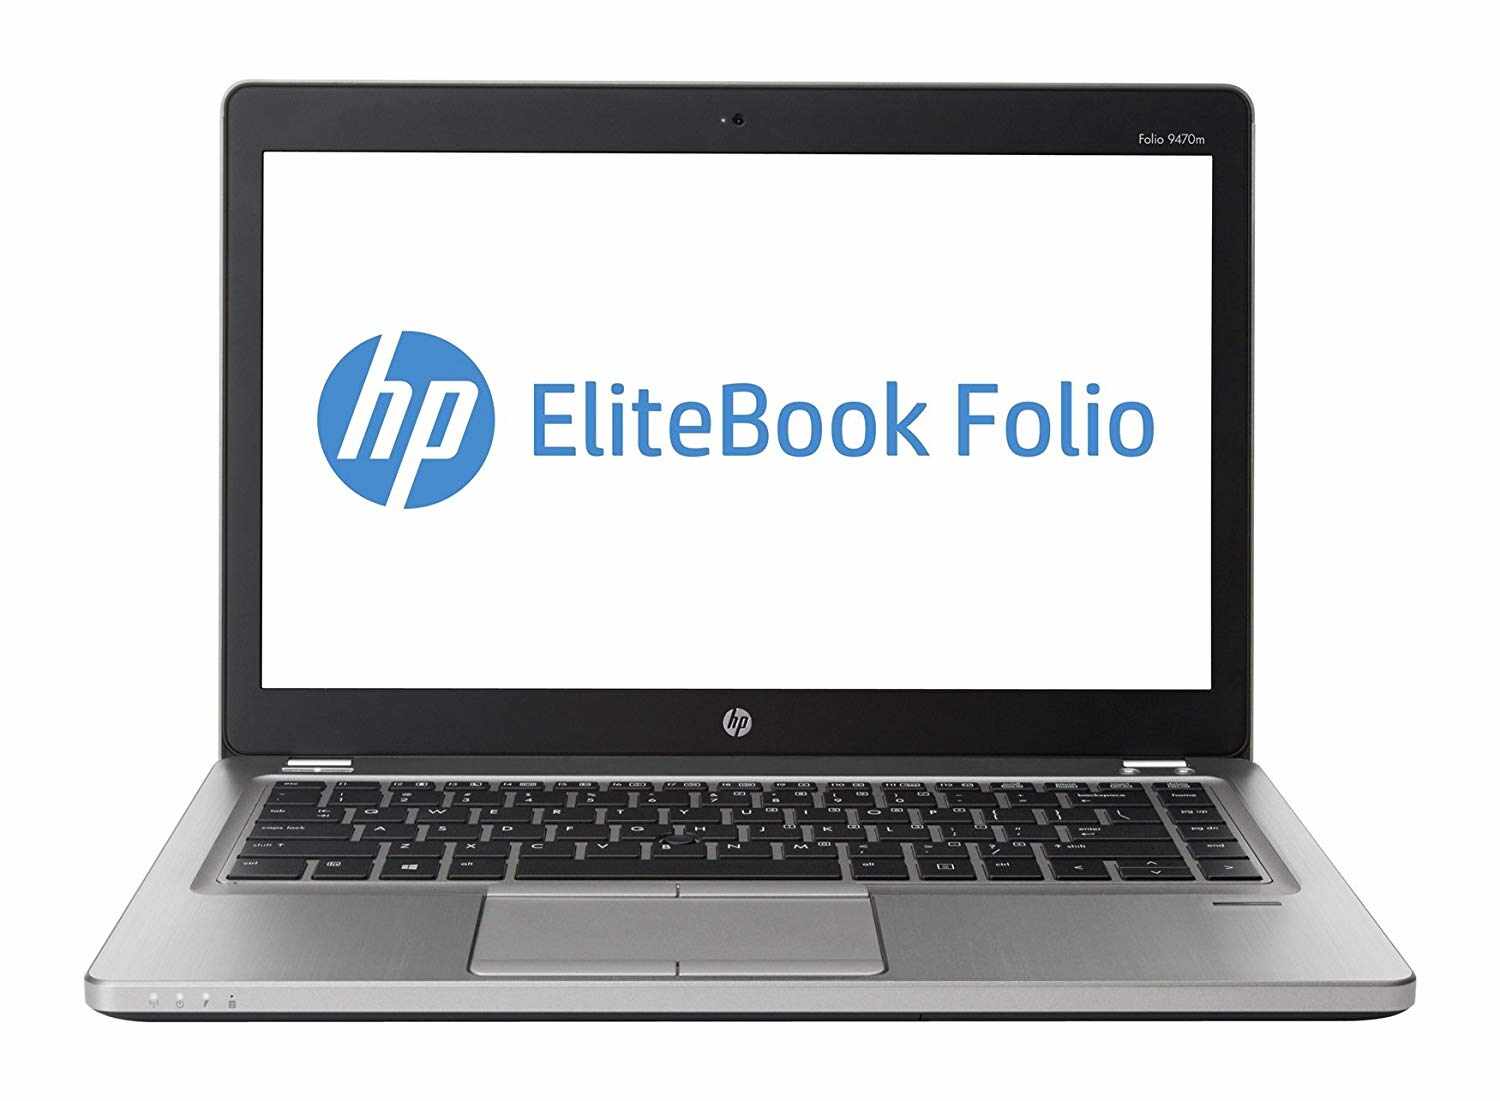 Laptop HP EliteBook Folio 9470M, Intel Core i7-3687U 2.10GHz, 8GB DDR3, 120GB SSD, 14 Inch, Webcam, Grad A-